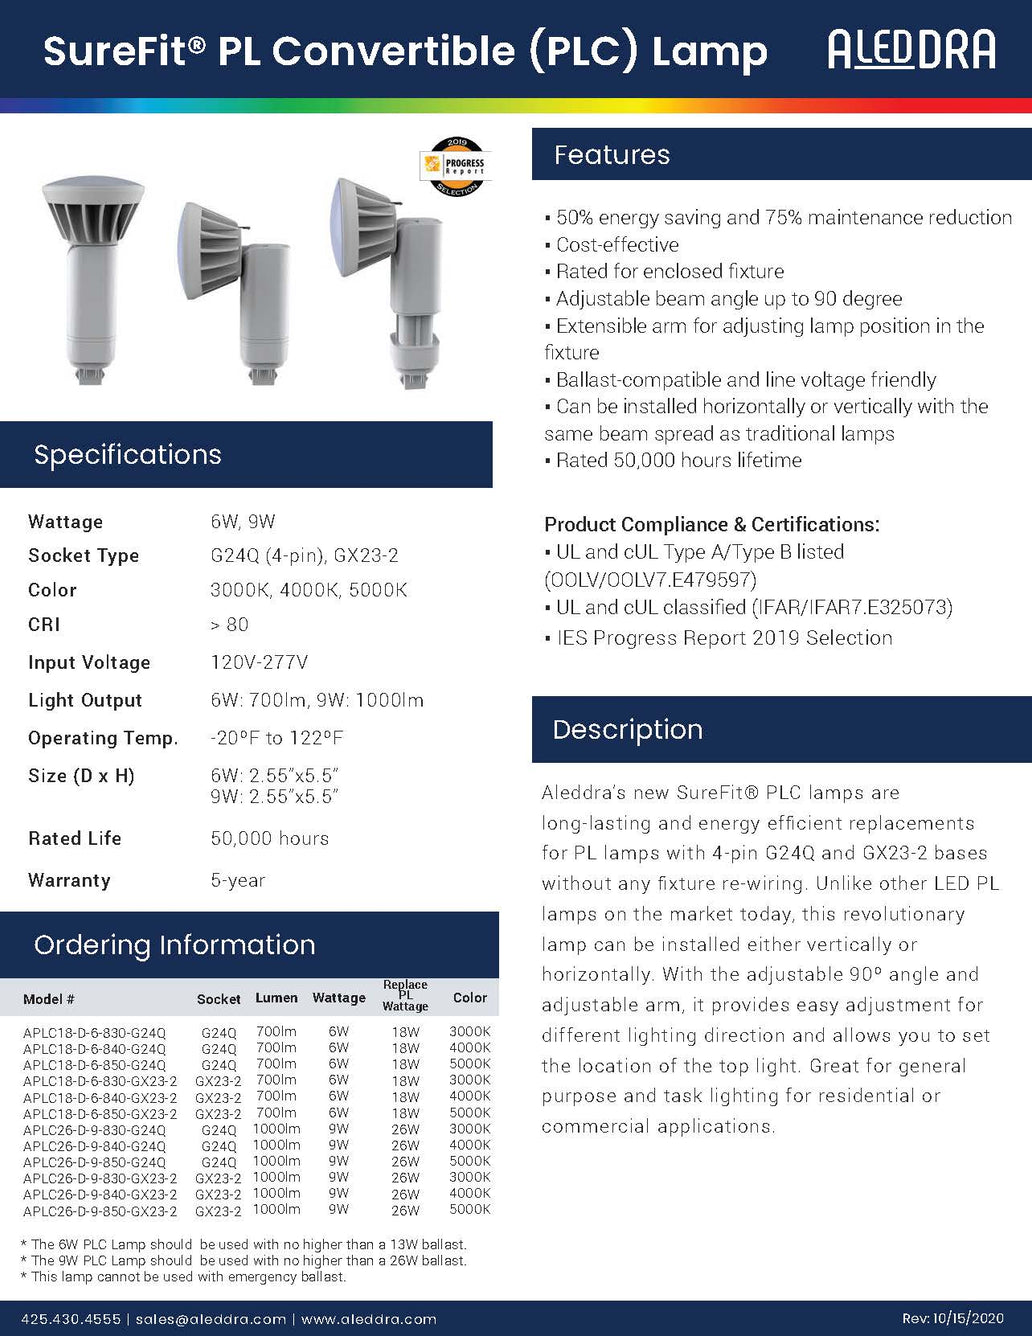 Aleddra - SureFit® PL Convertible (PLC) Lamp - 9W 3000K 4000K or 5000K CCT - 1000lm - APLC26-D-9-8XX-G24Q